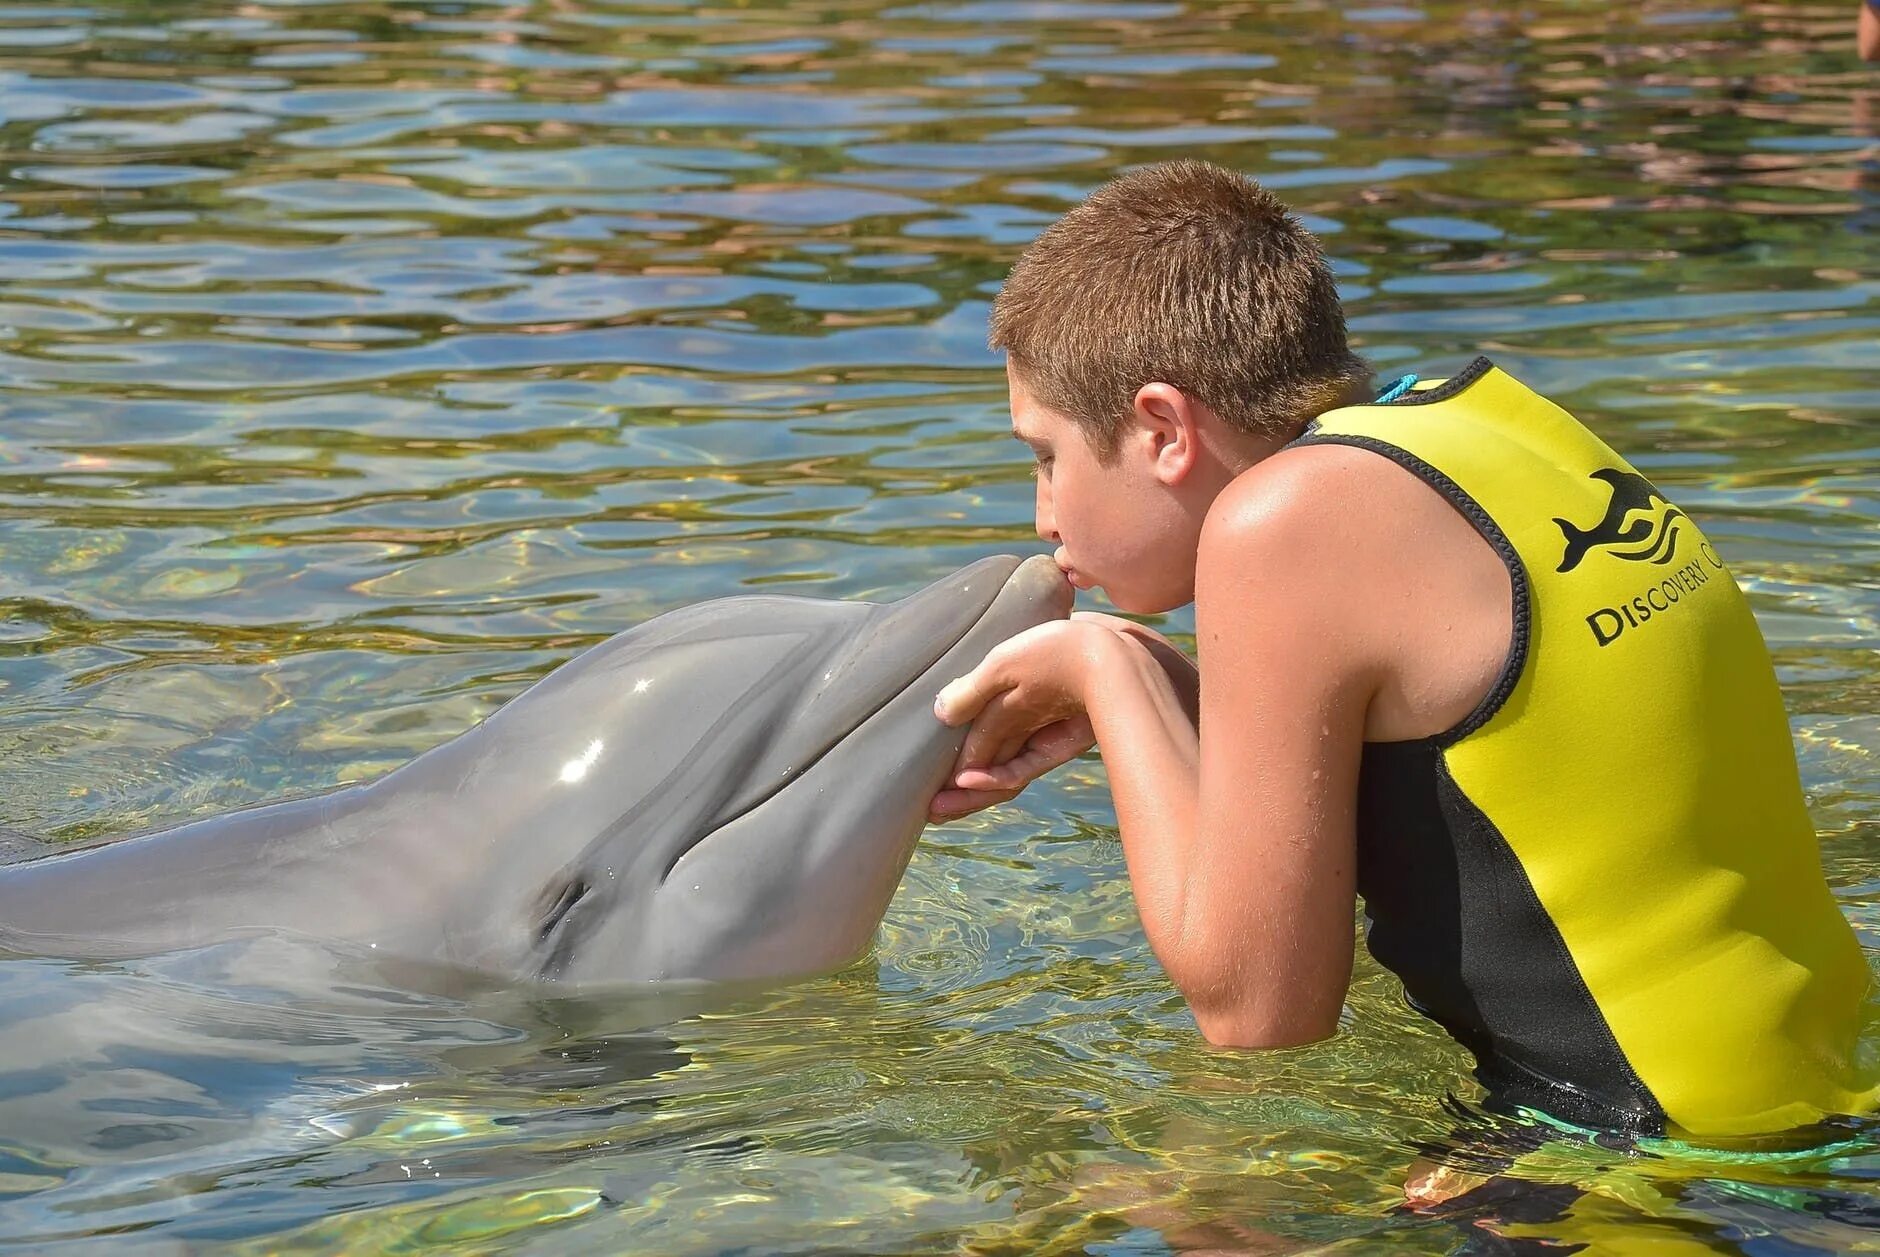 Удовольствие с дельфином. Человек Дельфин. Дельфины и люди. Мальчик Дельфин. Chelovel dilfin.